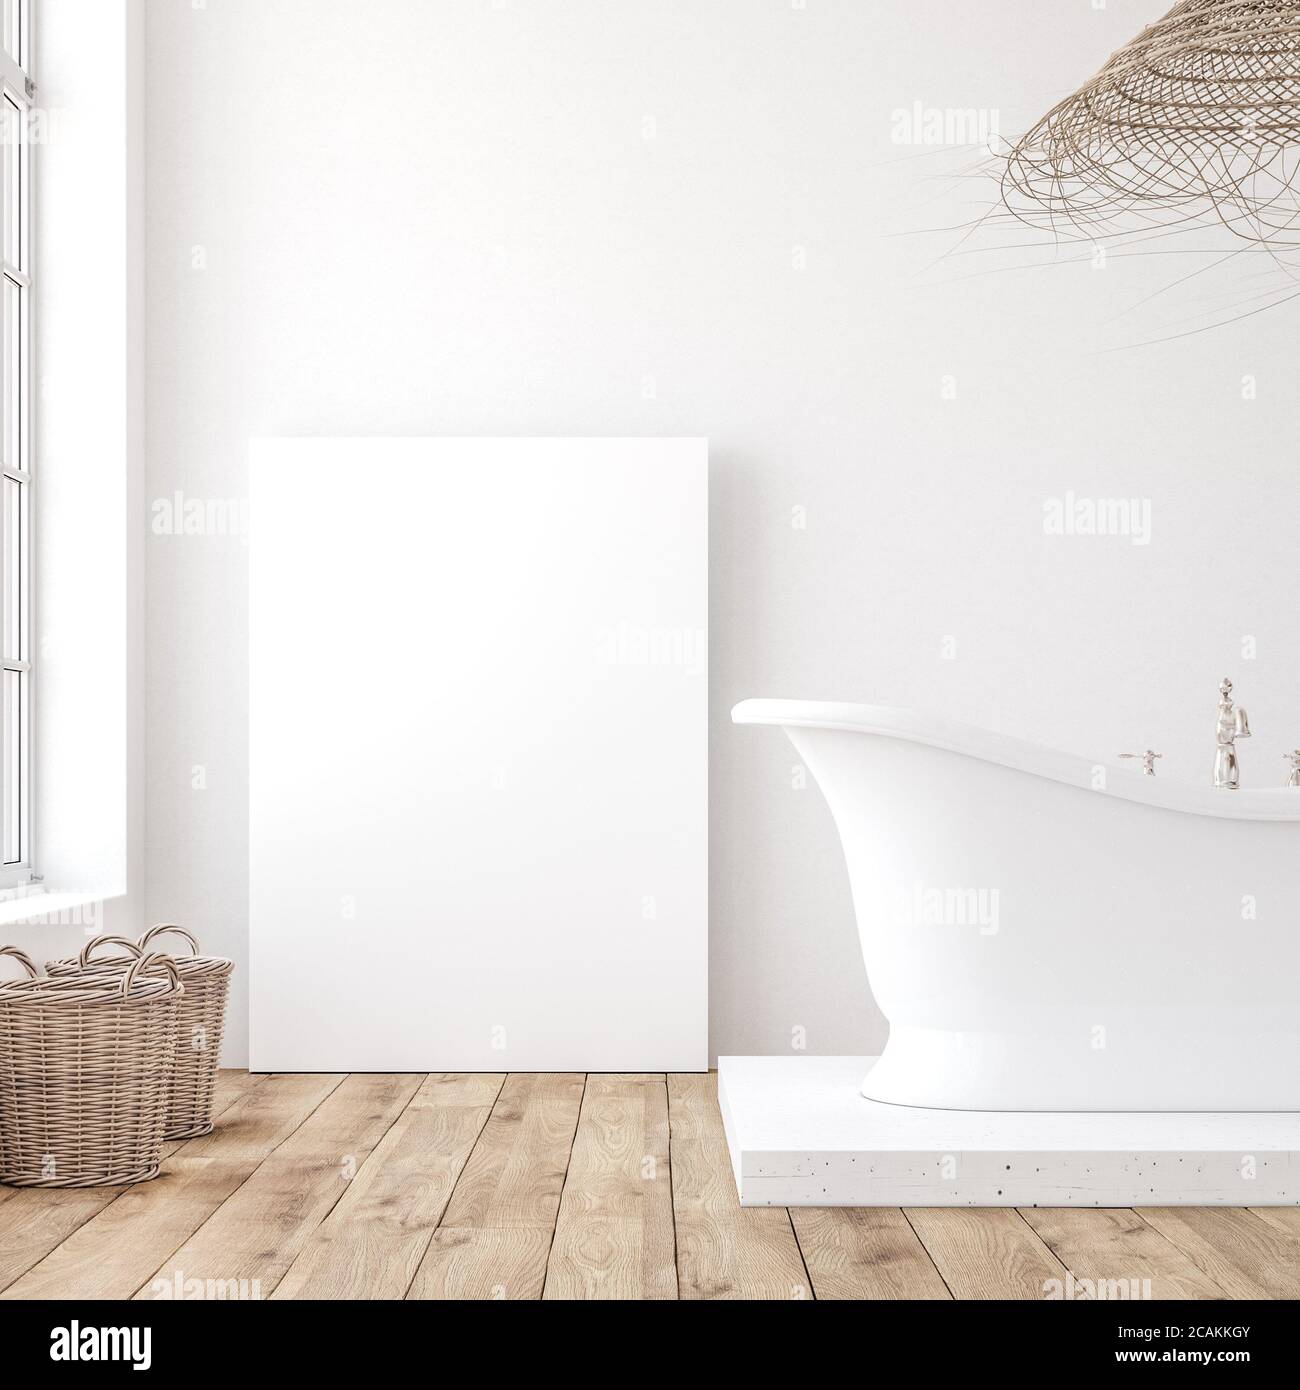 Affiche maquette dans un intérieur de salle de bains blanc minimaliste, rendu 3d Banque D'Images